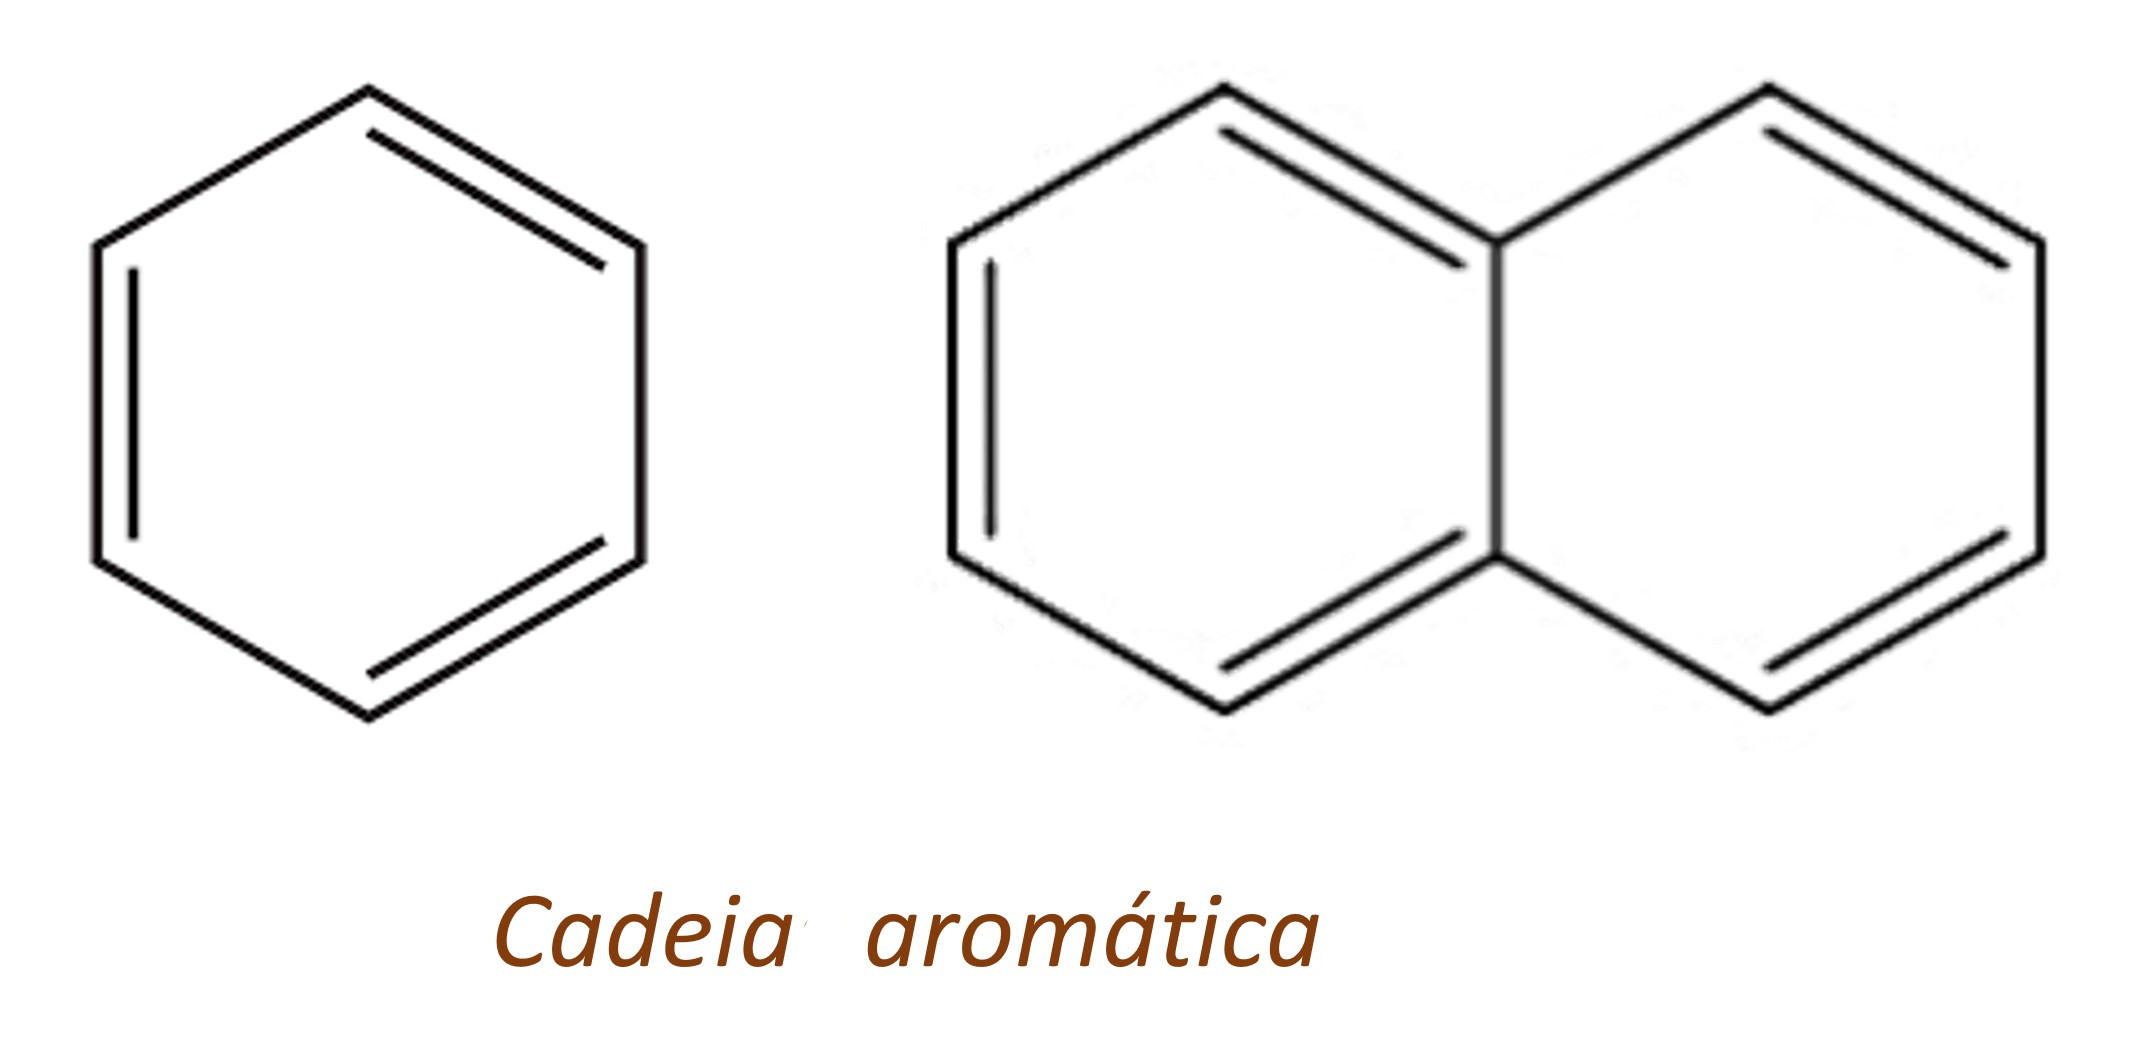 Cadeias carbônicas aromáticas, que apresentam anel aromático.